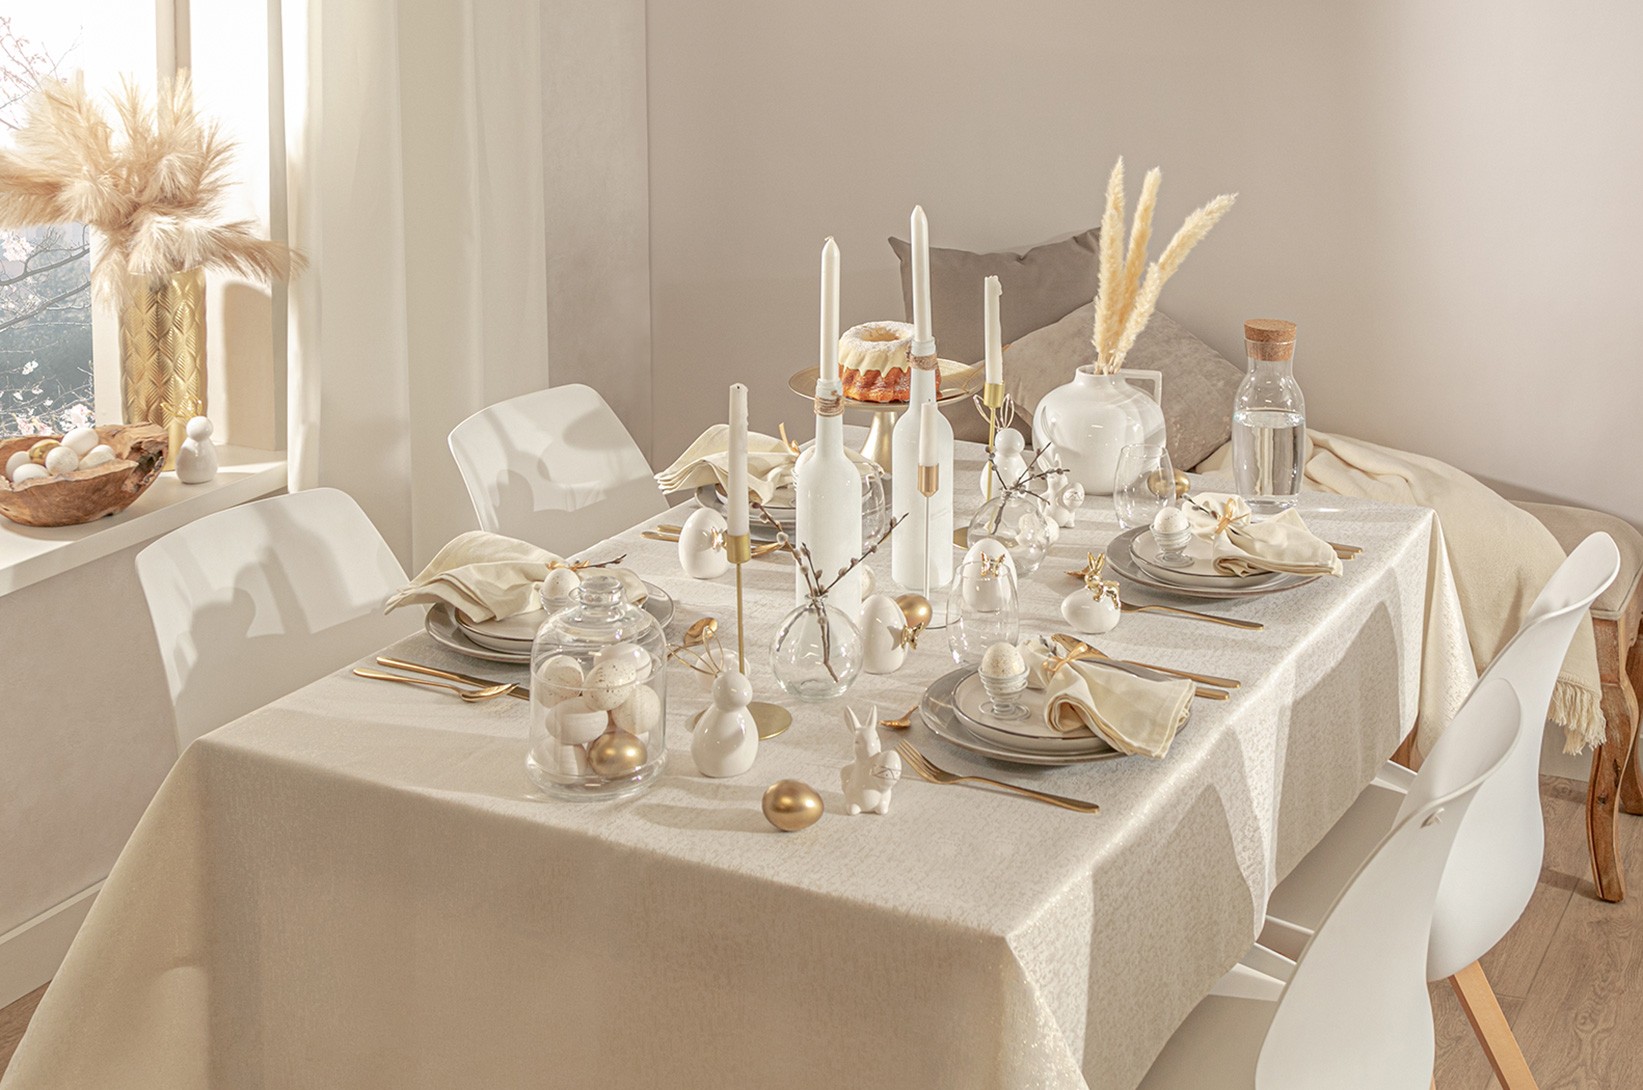 Salon na Wielkanoc - aranżacja stołu jadalnianego w jasnych kolorach